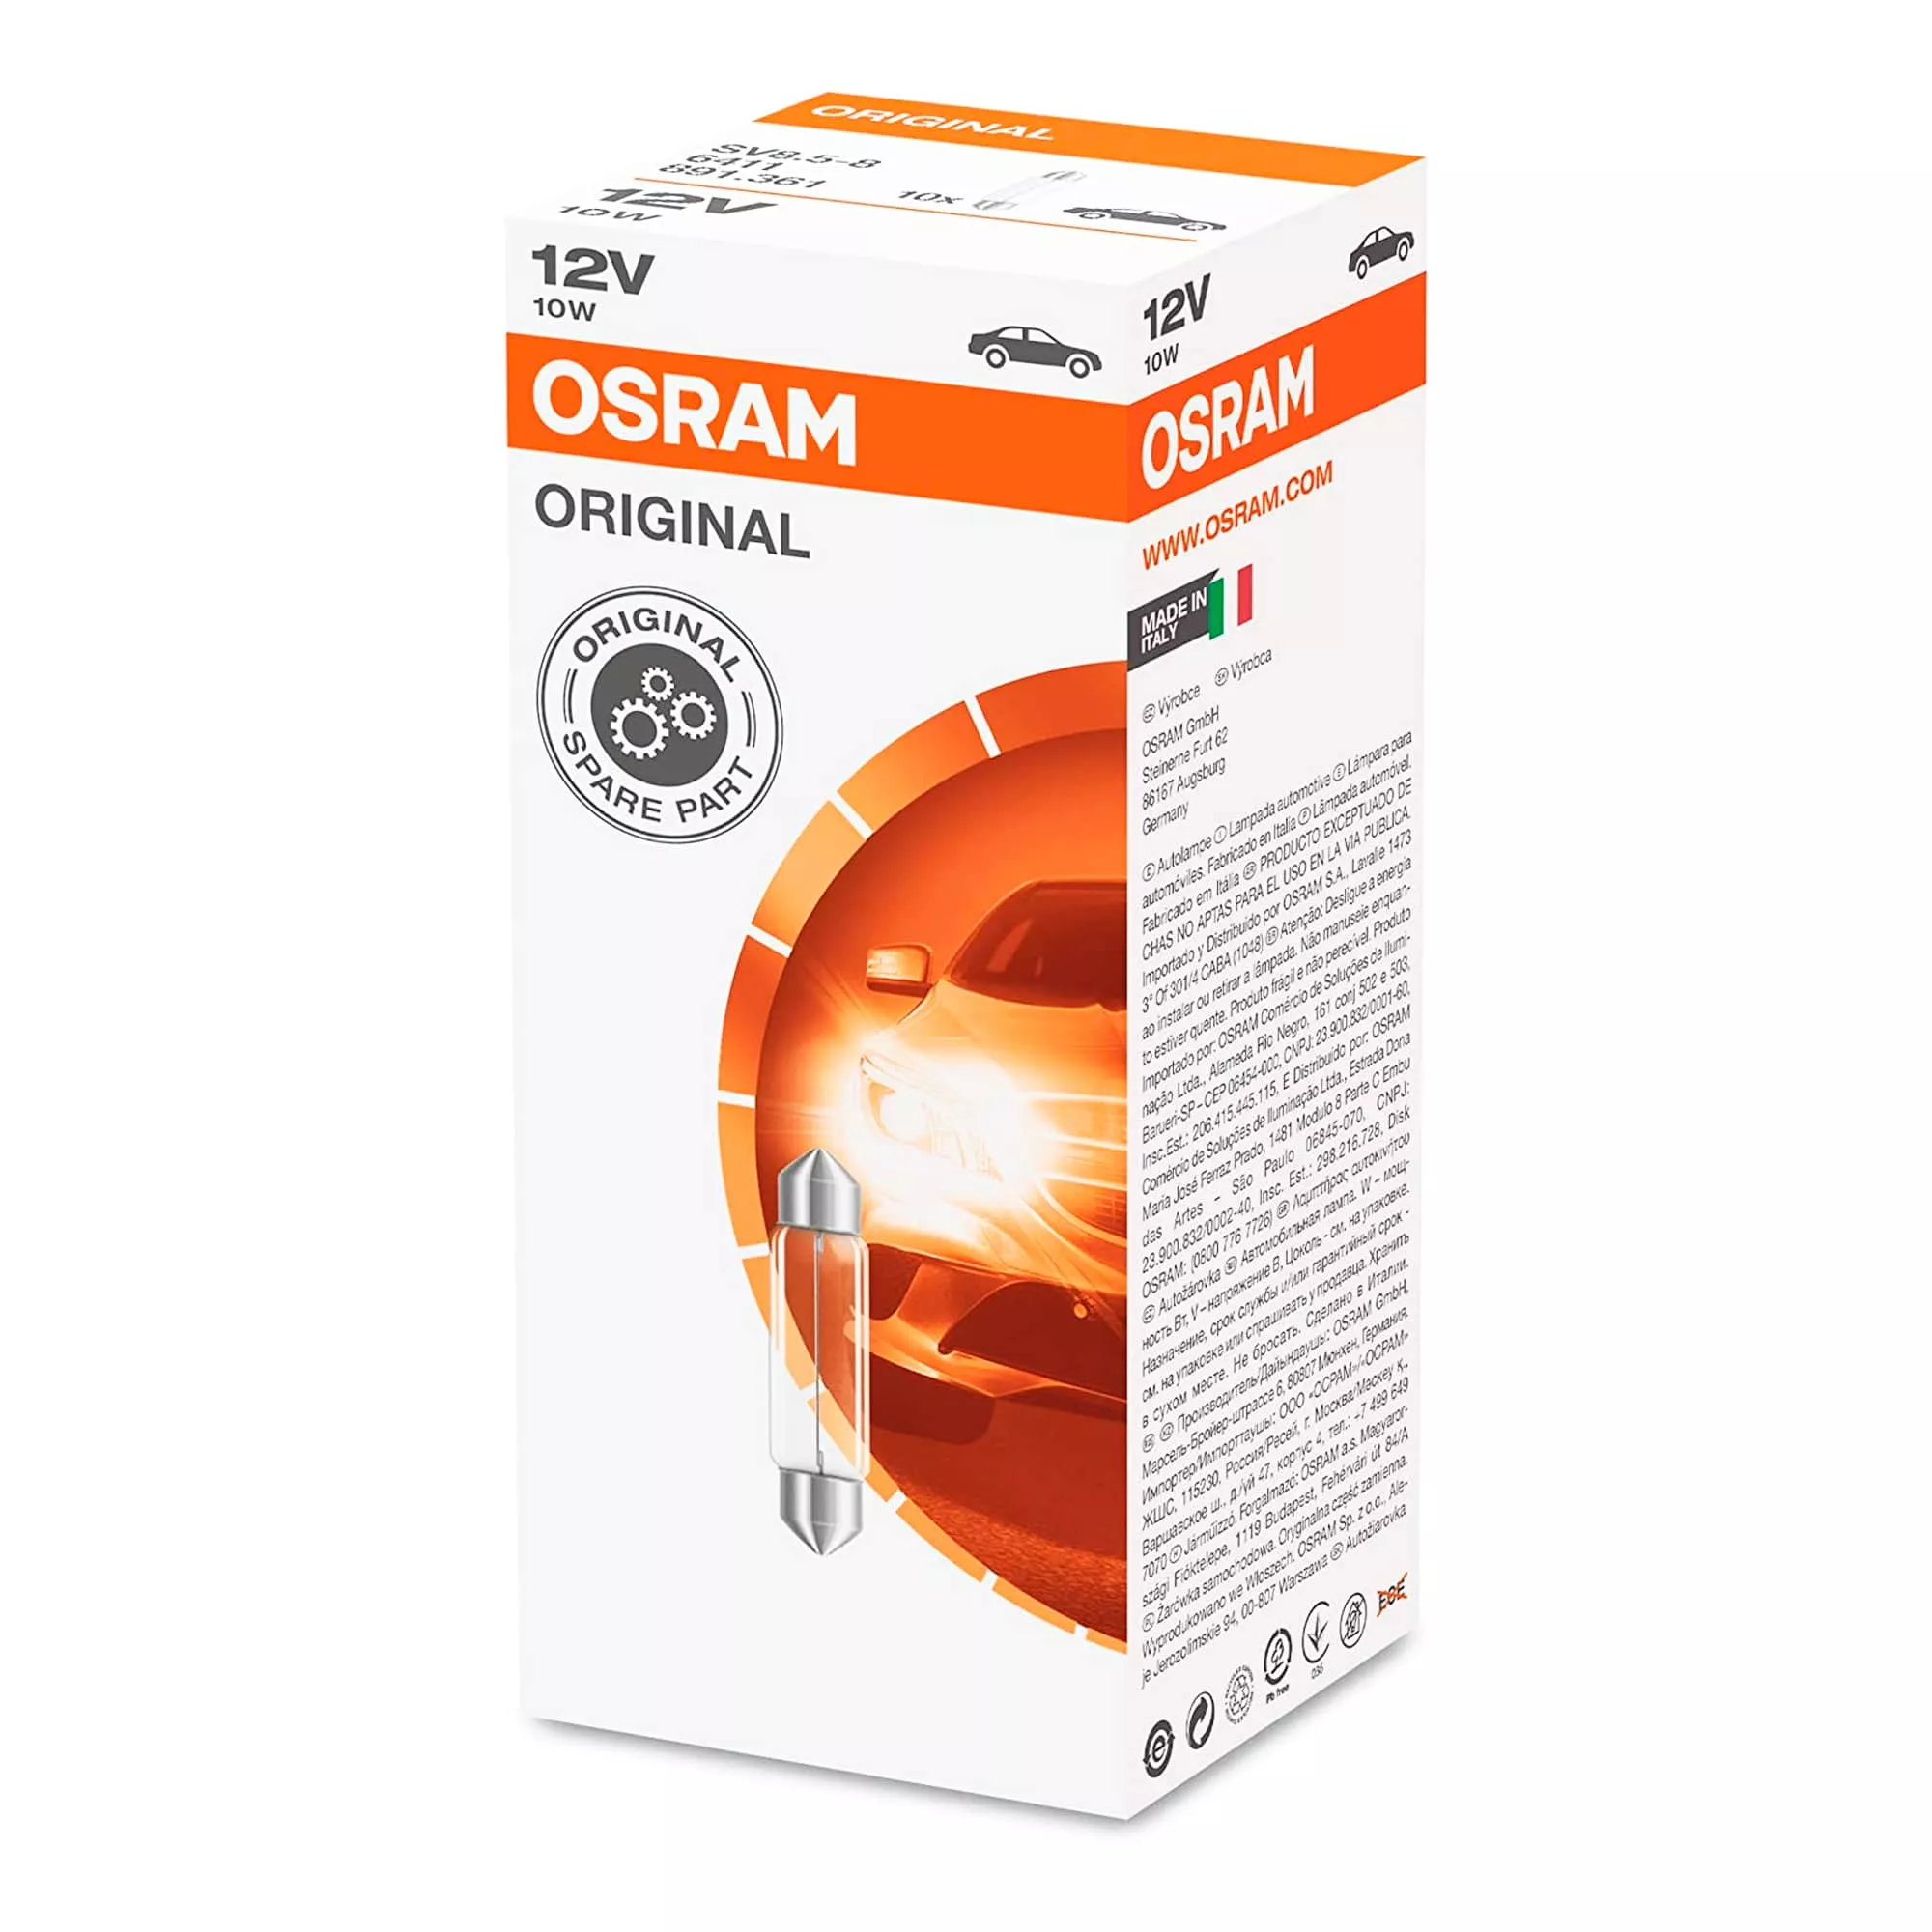 Лампа Osram Original C5W 12V 10W 6411